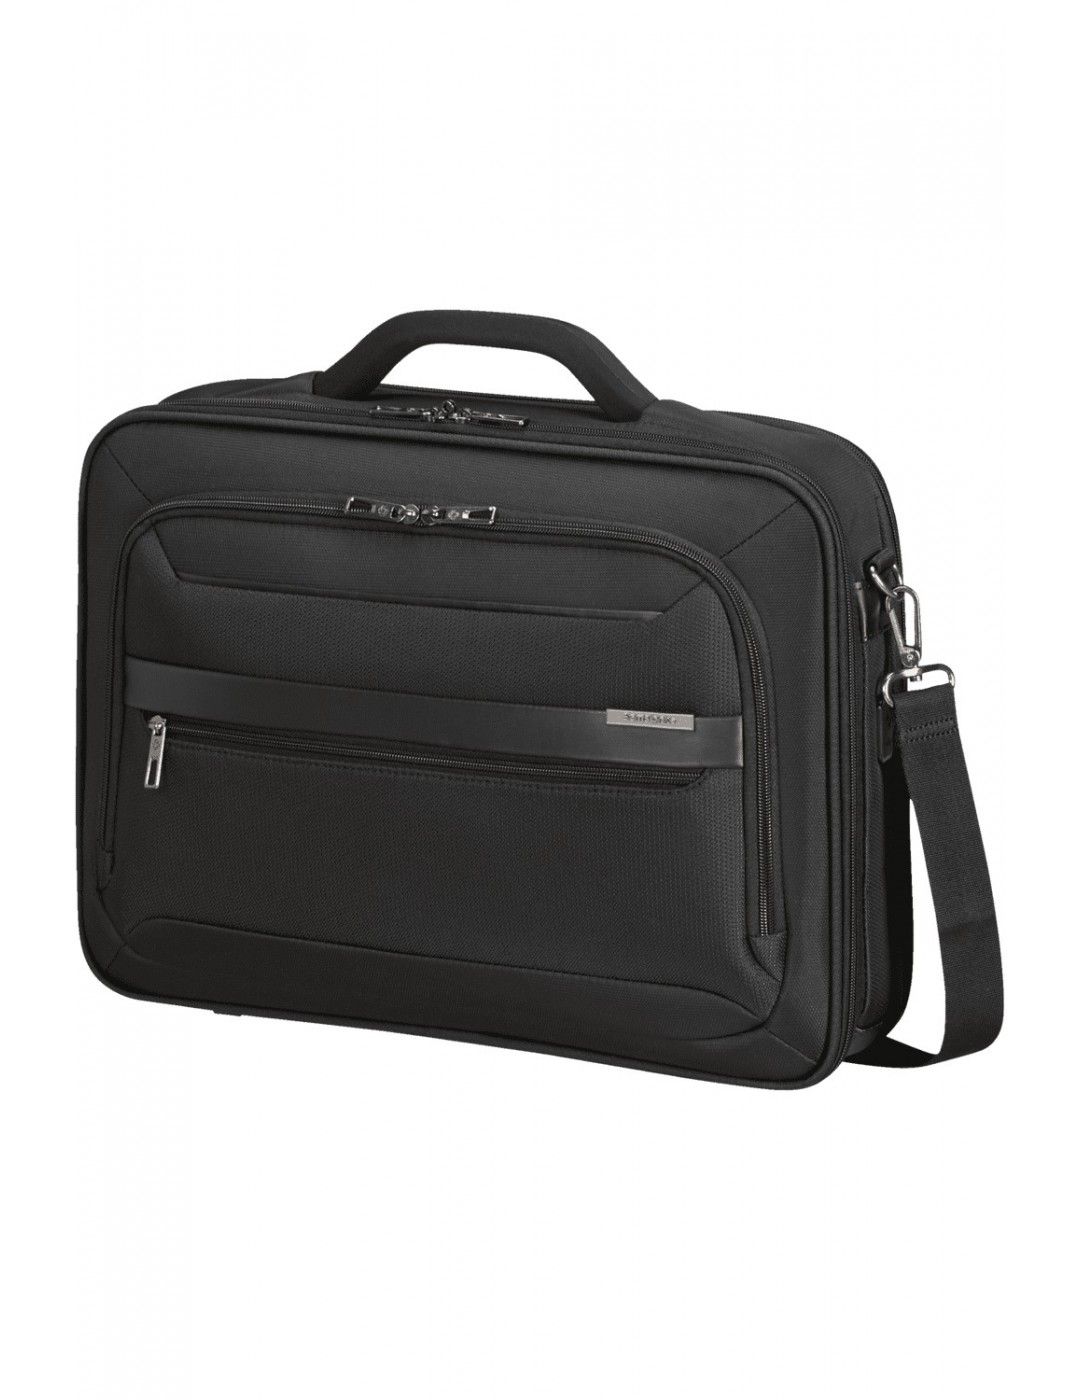 Samsonite Vectura Evo briefcase 17.3 inches 18.5L